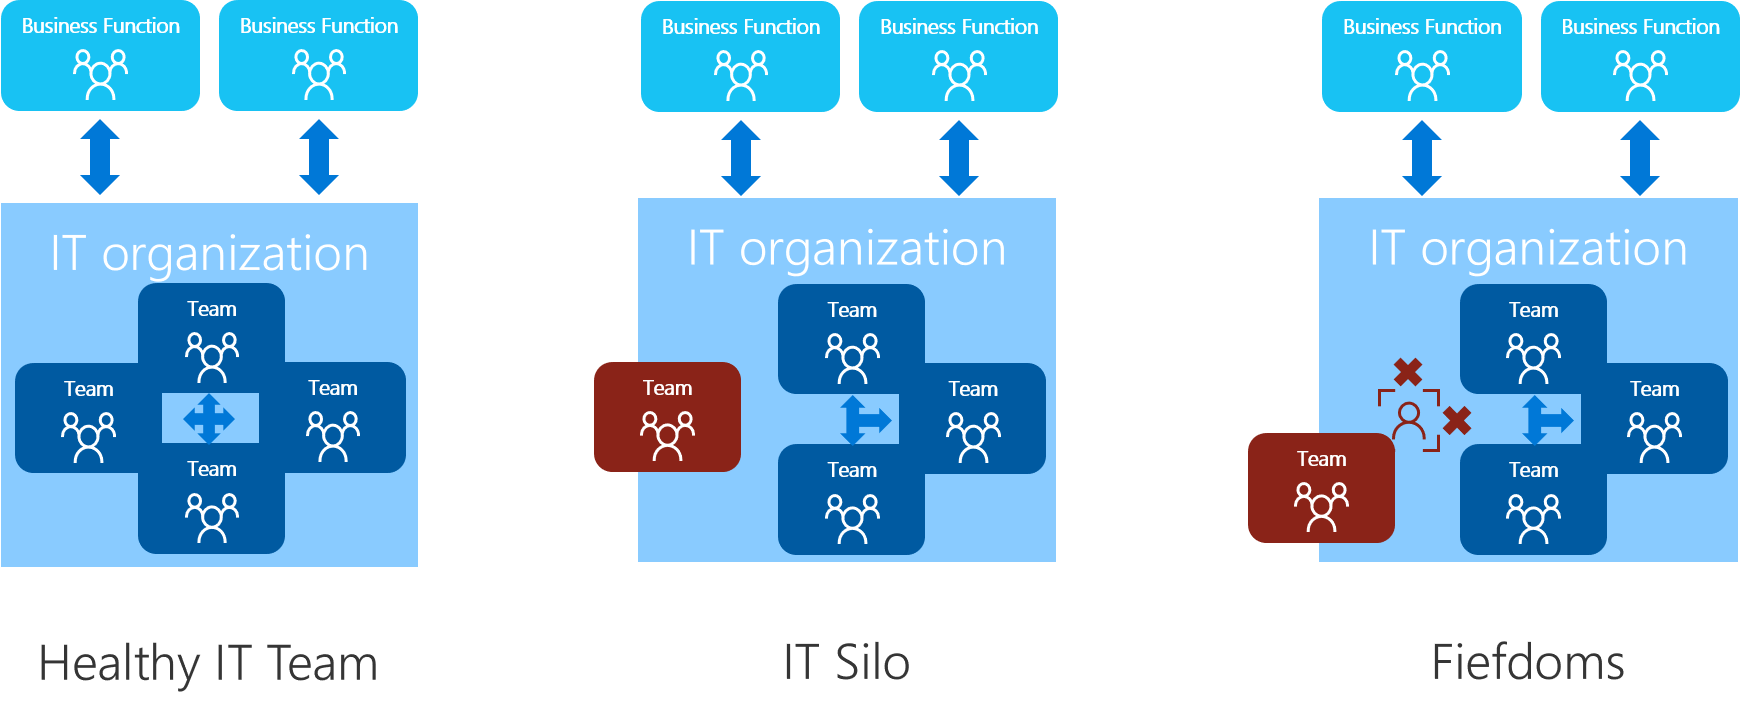 Diagrama que muestra una comparación de equipos sin problemas y antipatrones de la organización.